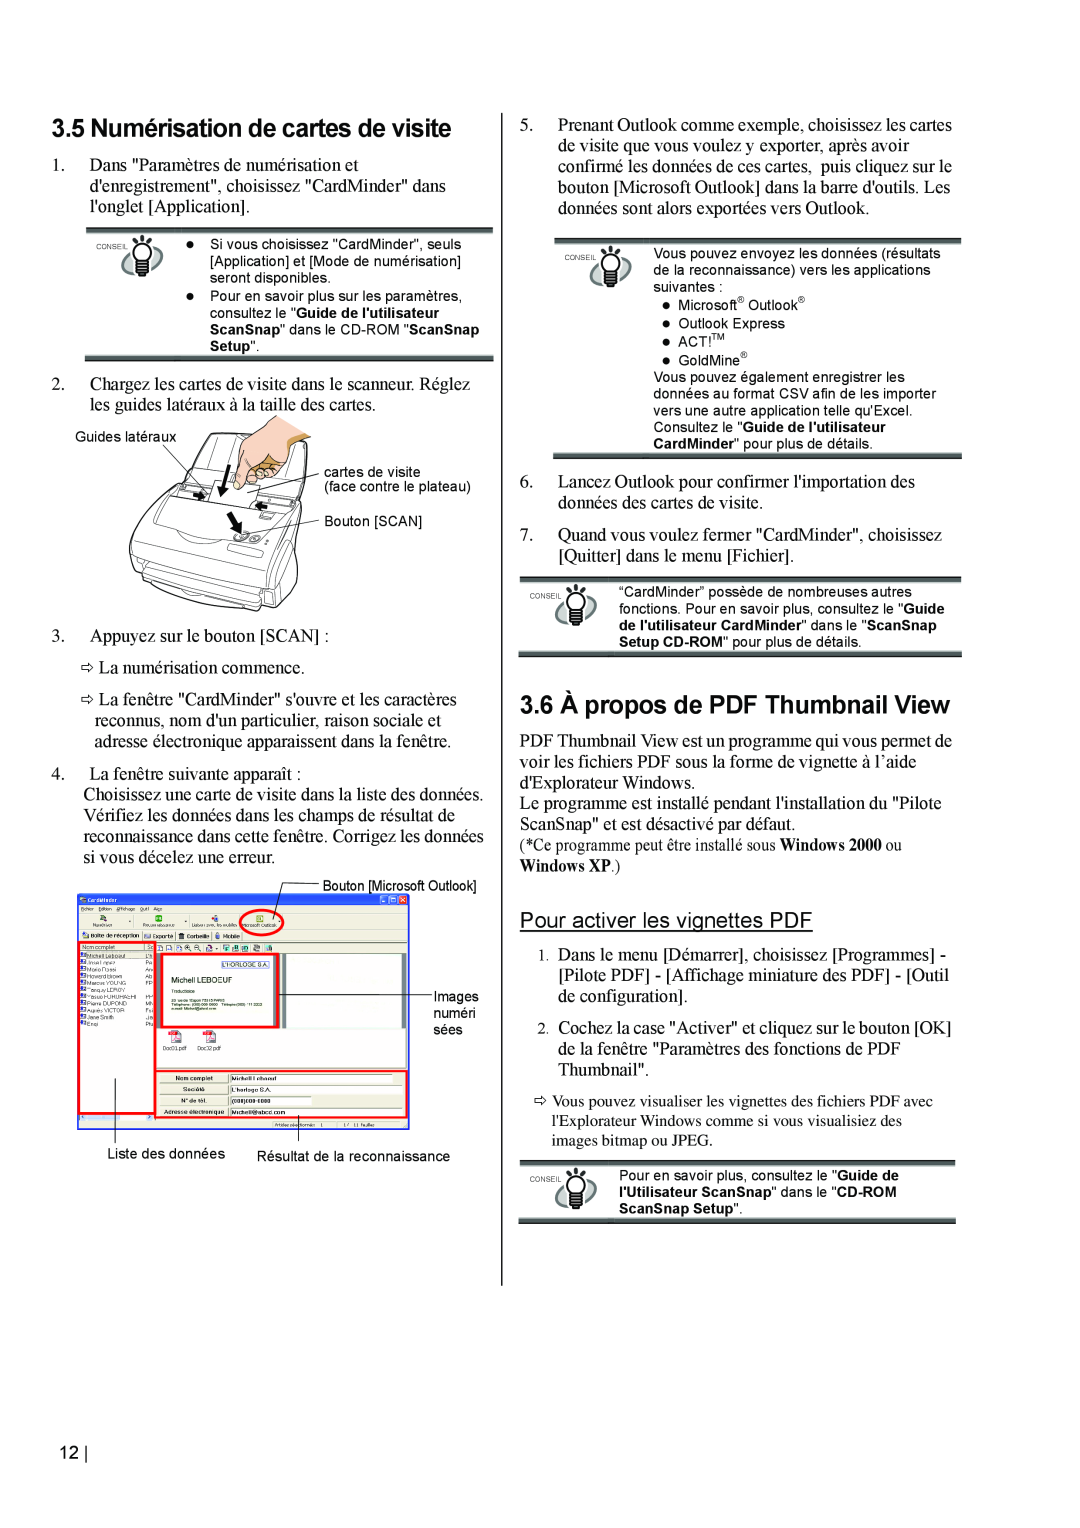 Fujitsu fi-5110EOX2 manual 3.5 Numérisation de cartes de visite, 3.6 À propos de PDF Thumbnail View 